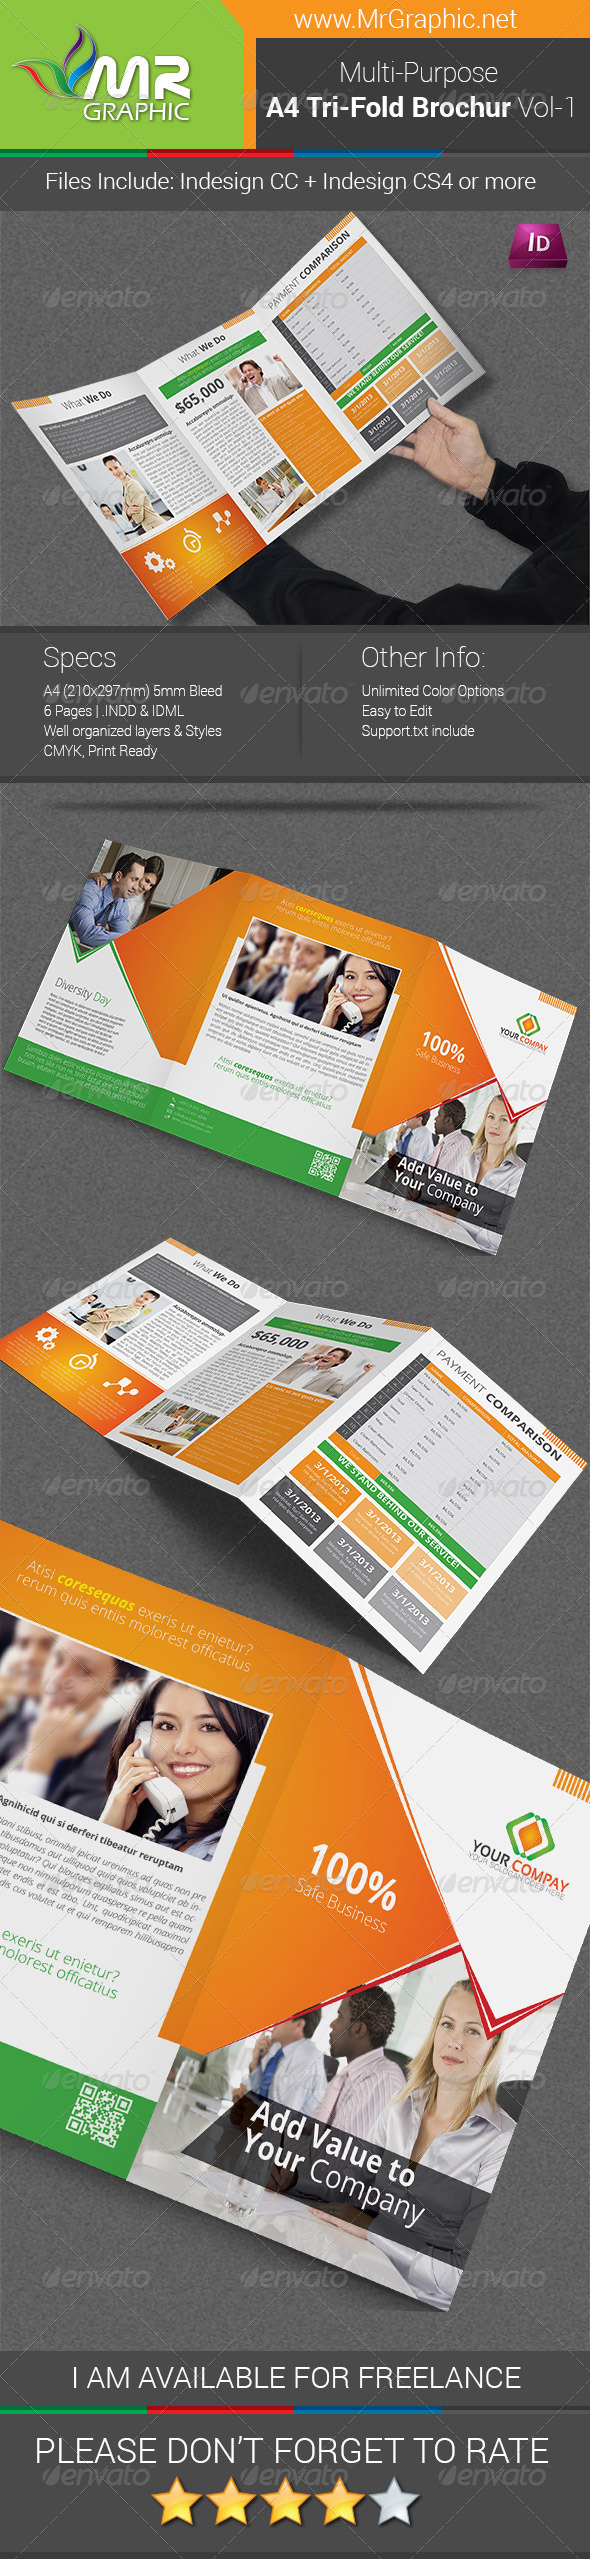 Multipurpose A4 Tri-Fold Brochure Template Vol-1 (Corporate)